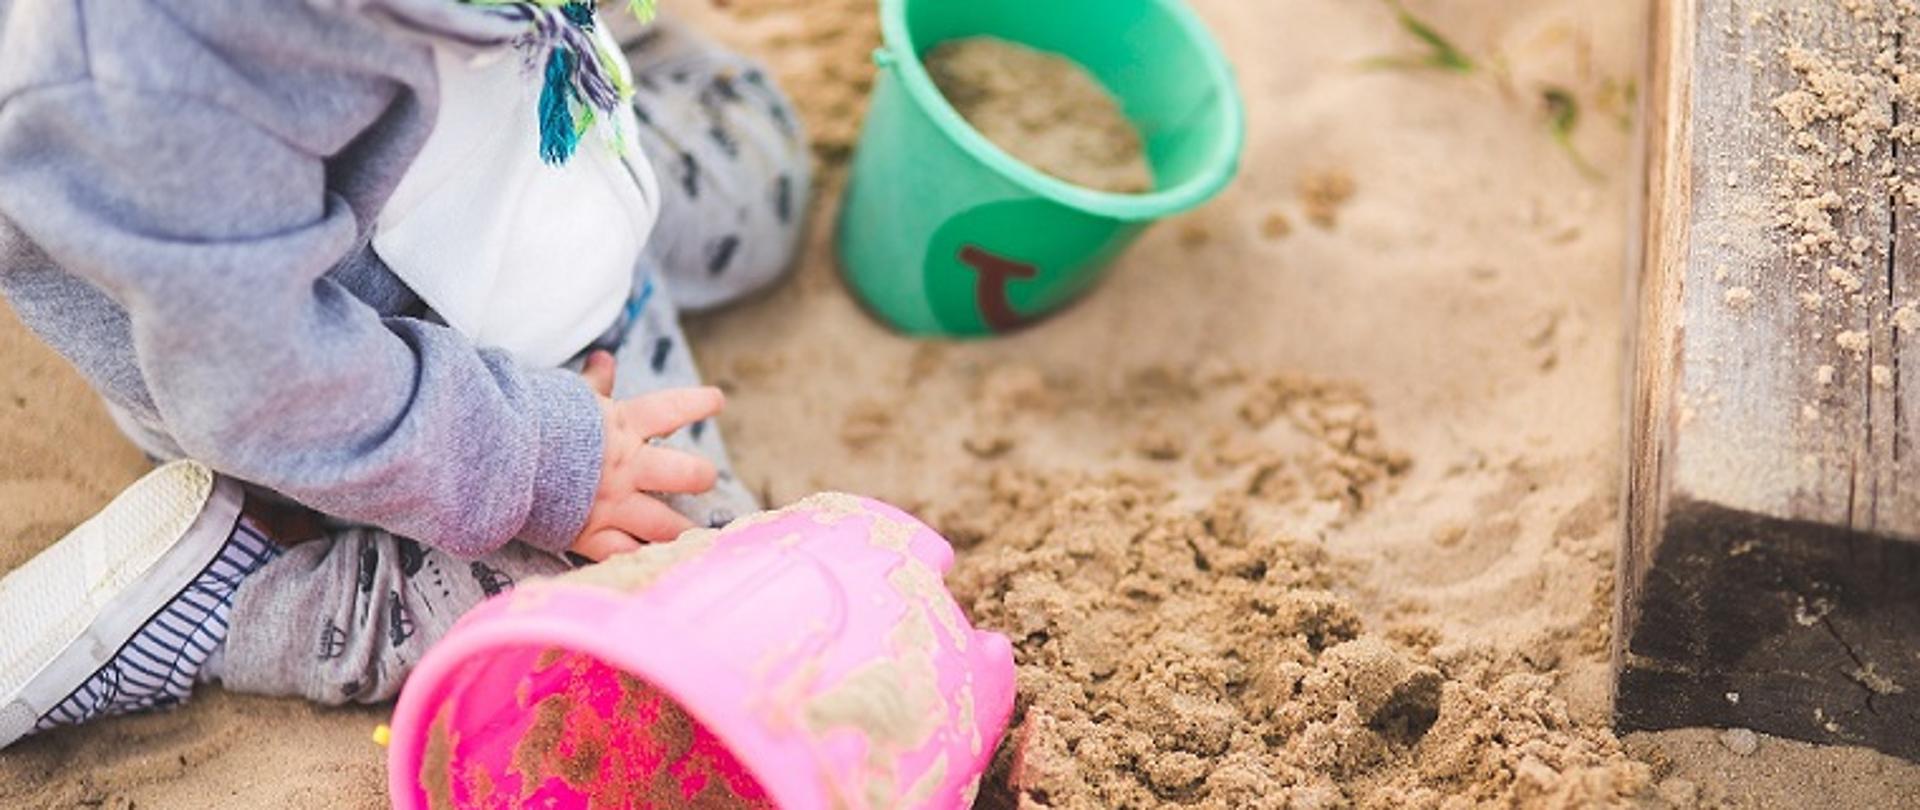 Małe dziecko w piaskownicy, bawi się piaskiem z wiaderkami